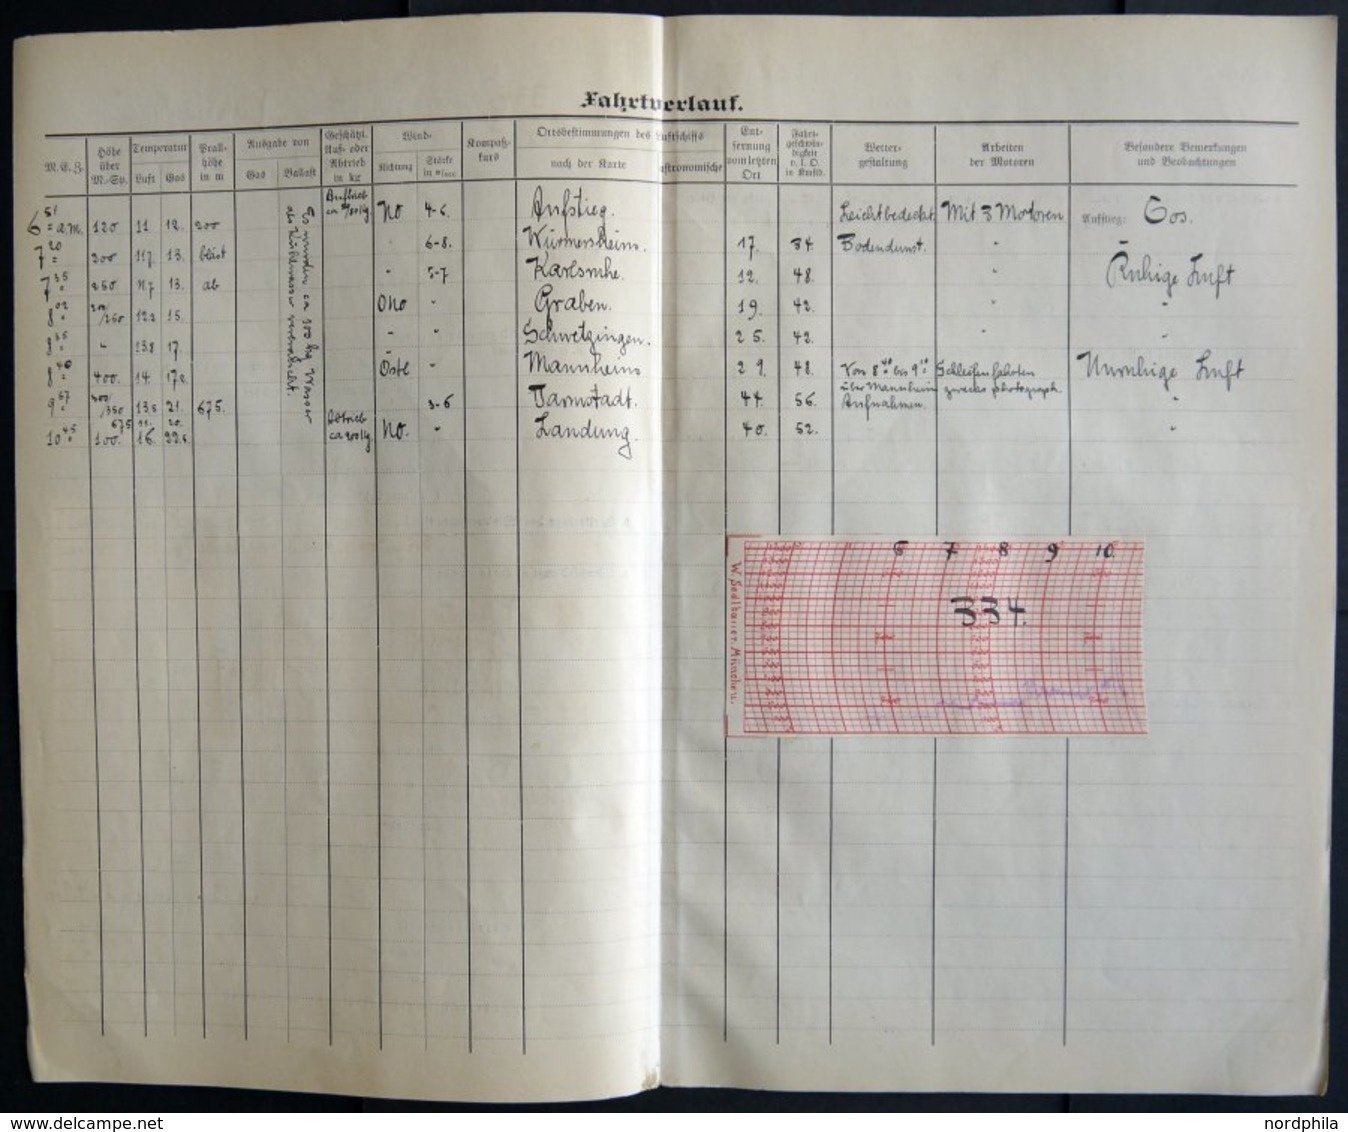 19.8.-29.10.1913, LZ 11 Viktoria Luise, 59 Fahrtberichte, ausgestellt von den Führern Dr. Lempertz und Blew. Alle vierse